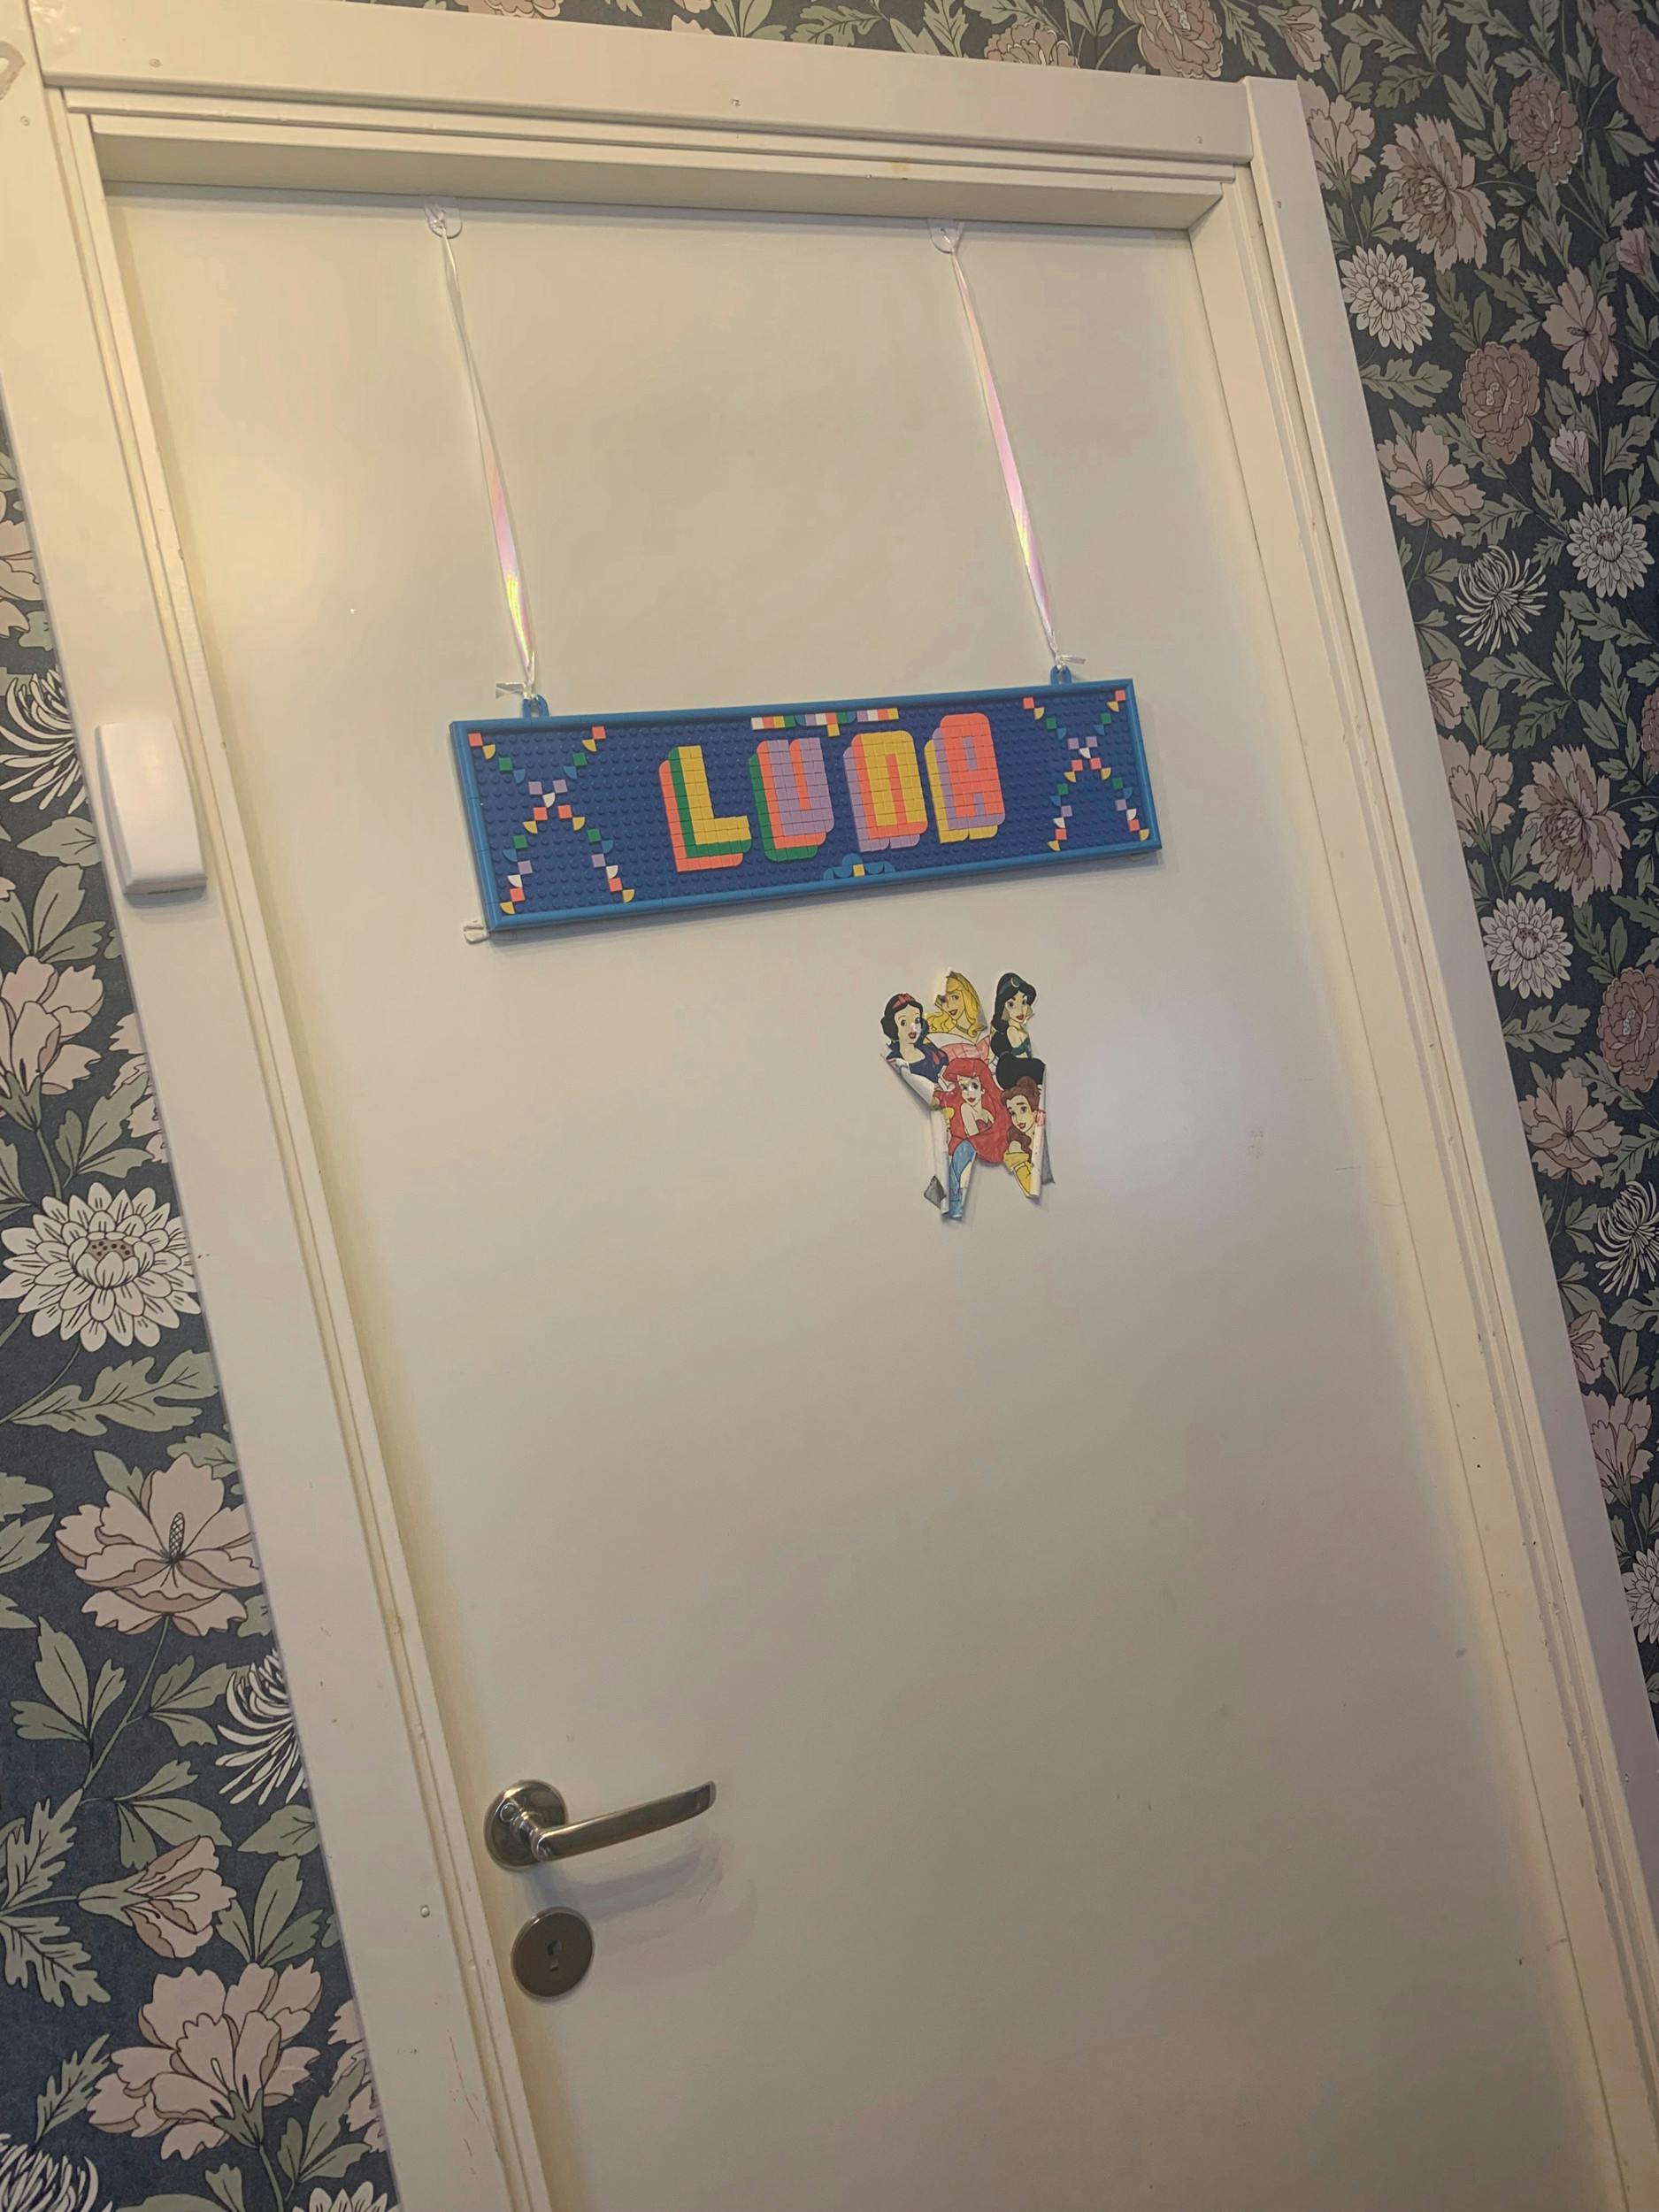 Døren til Lunas værelse med hendes navneskilt lavet af Lego.